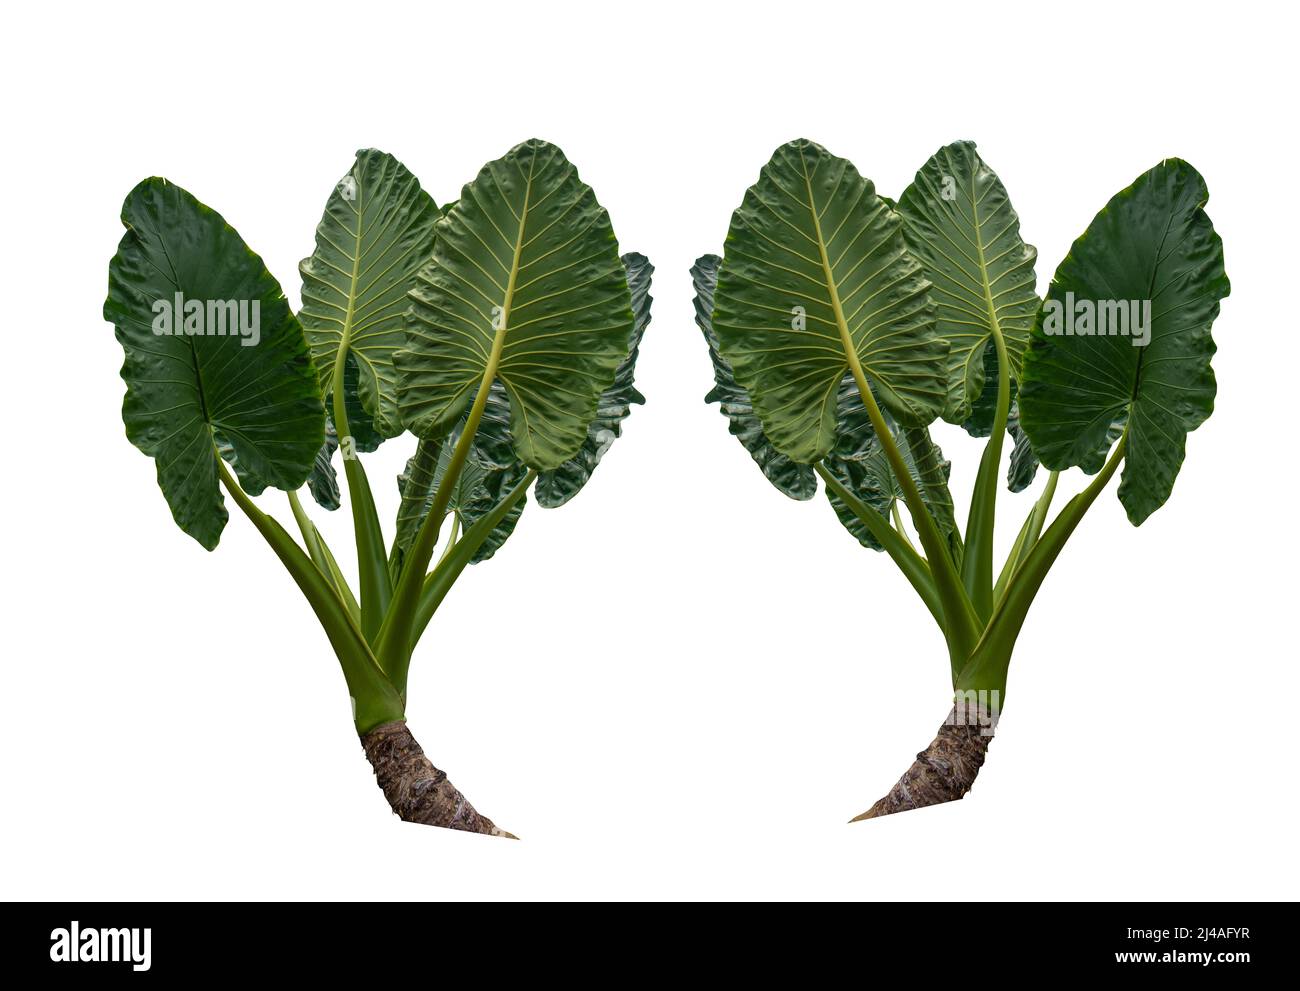 Herzförmige grüne Blätter des Elefantenohrs oder des Riesentaros (Arocasia-Arten), tropische Regenwald-Laubgarten-Pflanze isoliert auf weißem Hintergrund mit Stockfoto